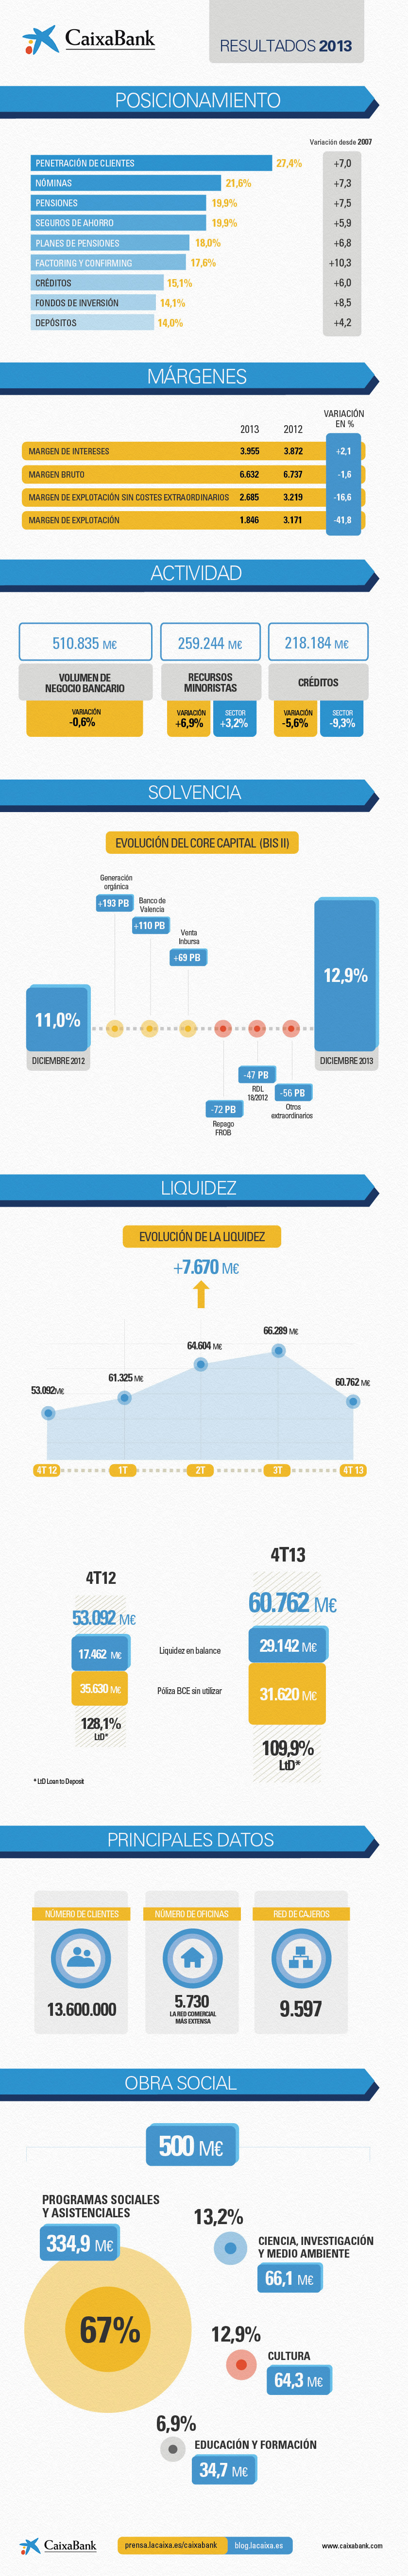 Infografía. Resultados de CaixaBank 2013